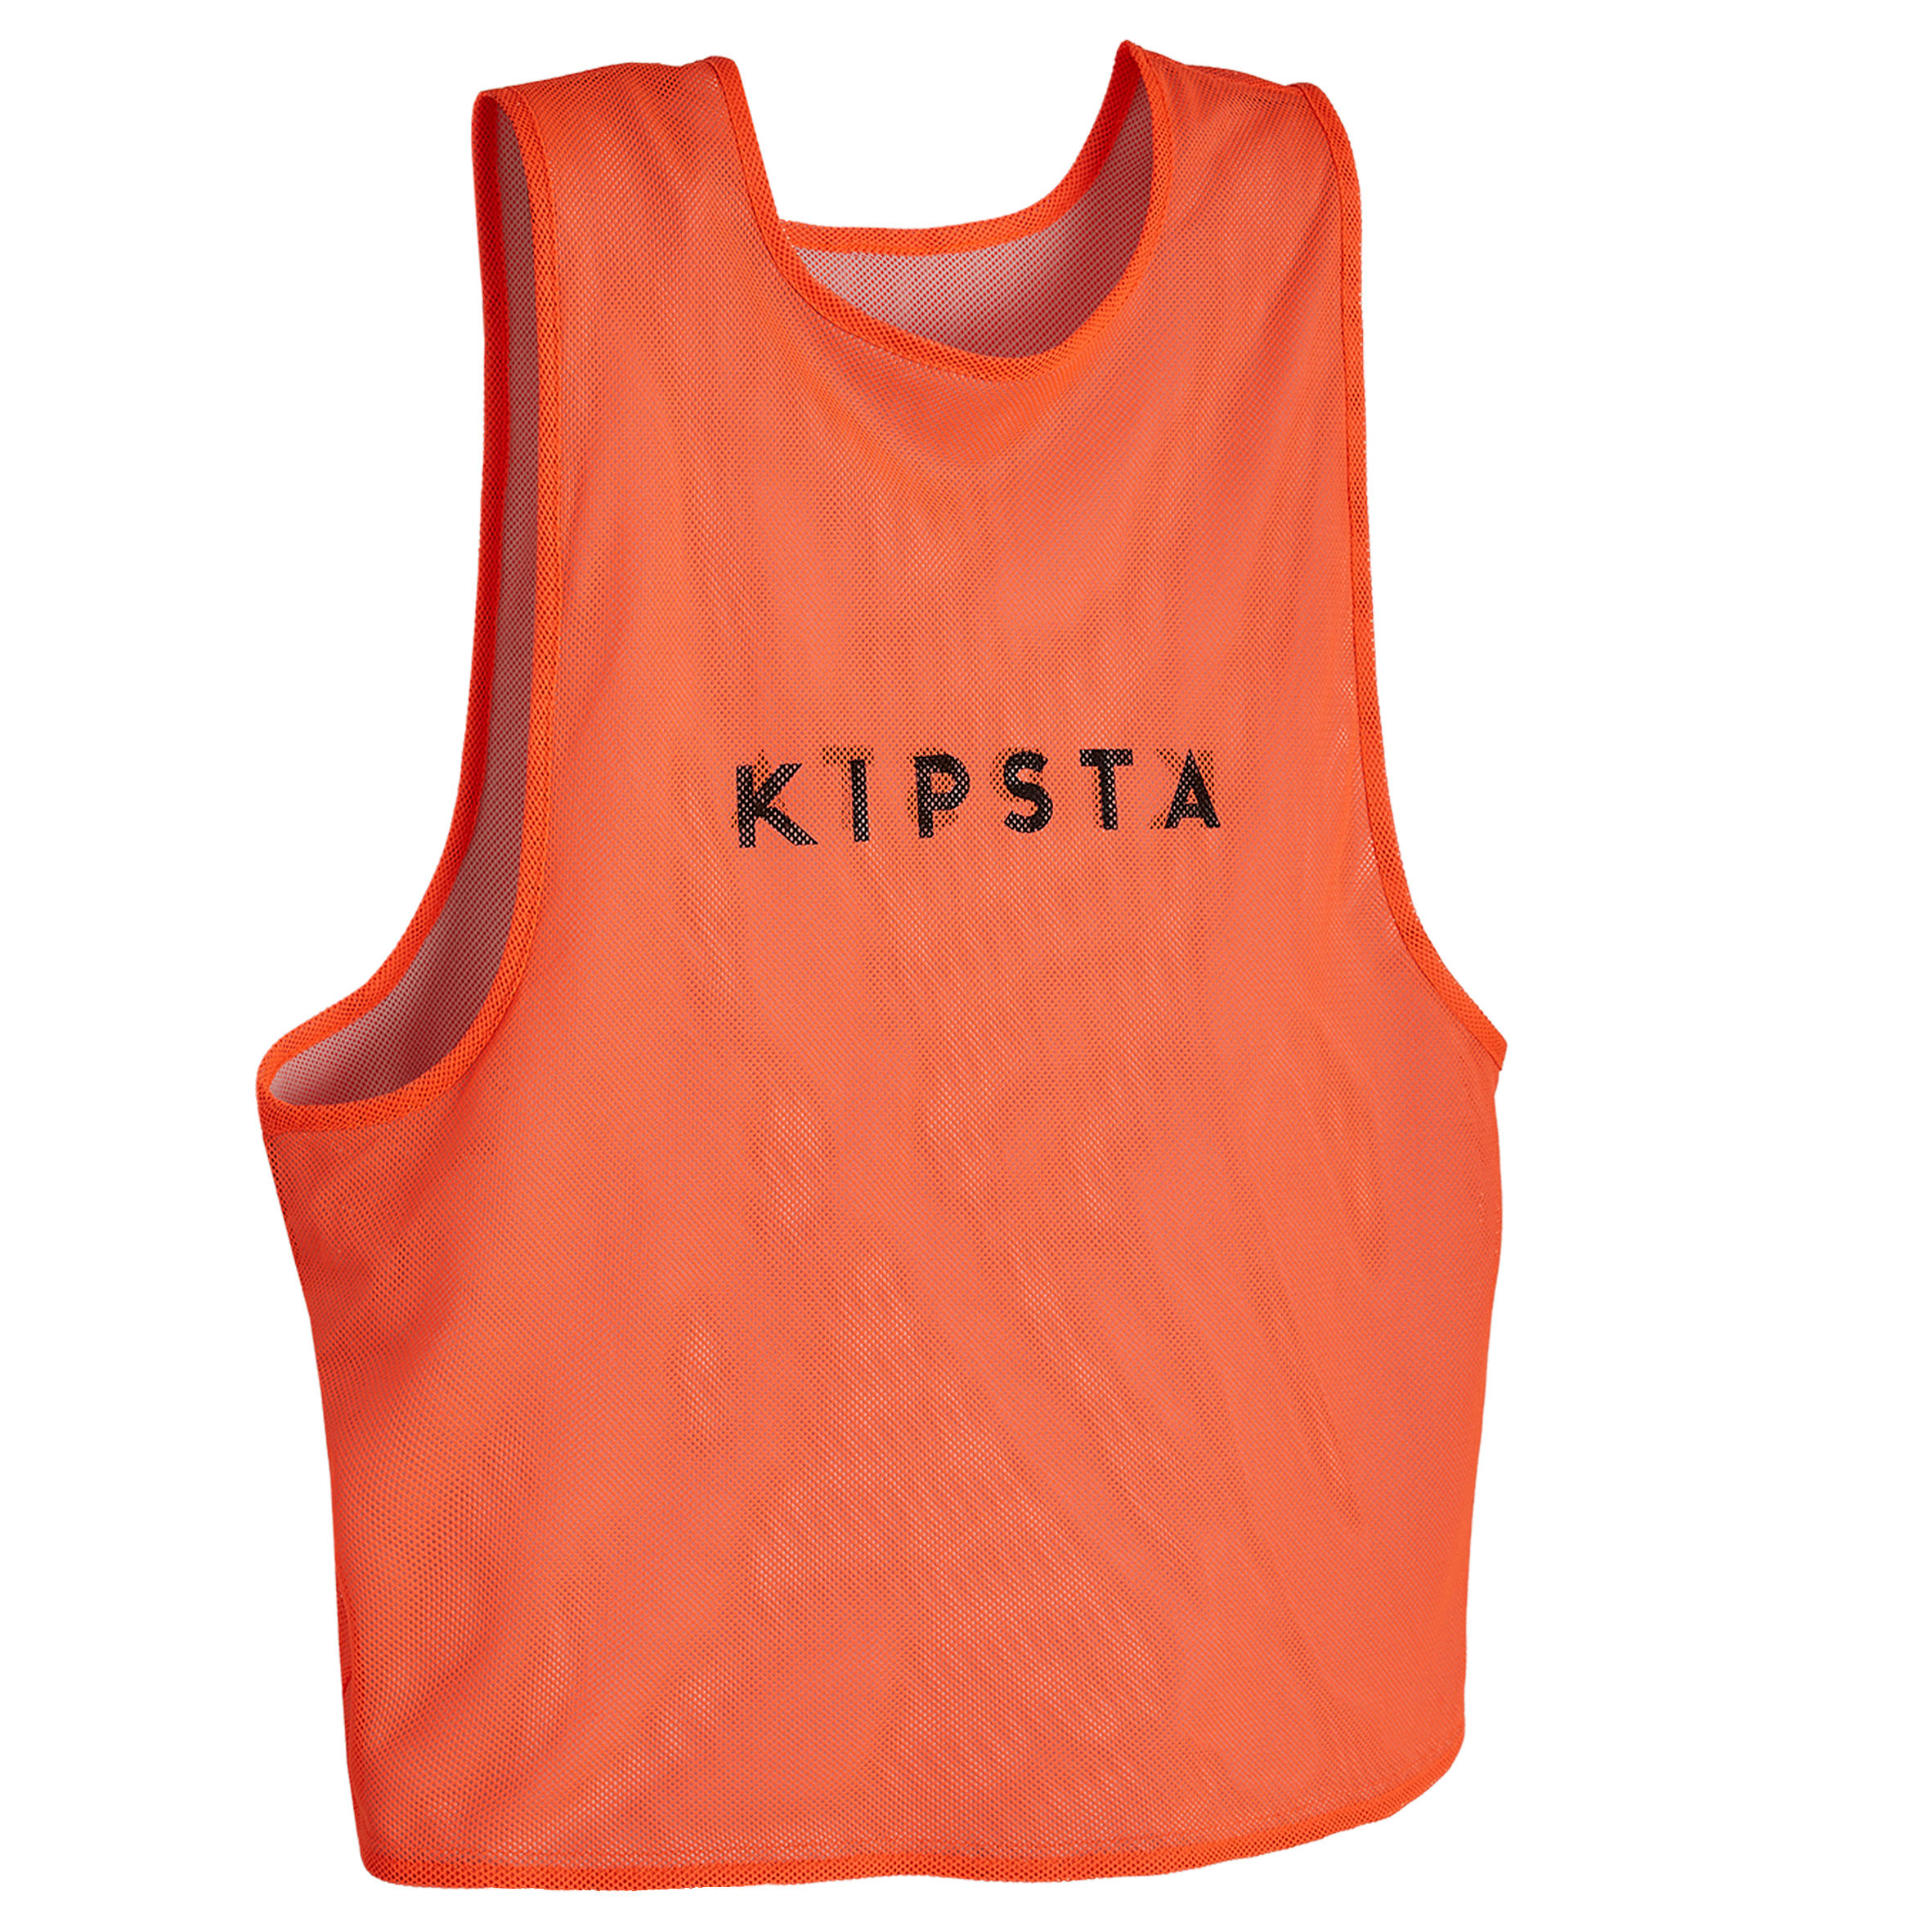 KIPSTA Reversible Adult Sports Bib - Orange/Grey